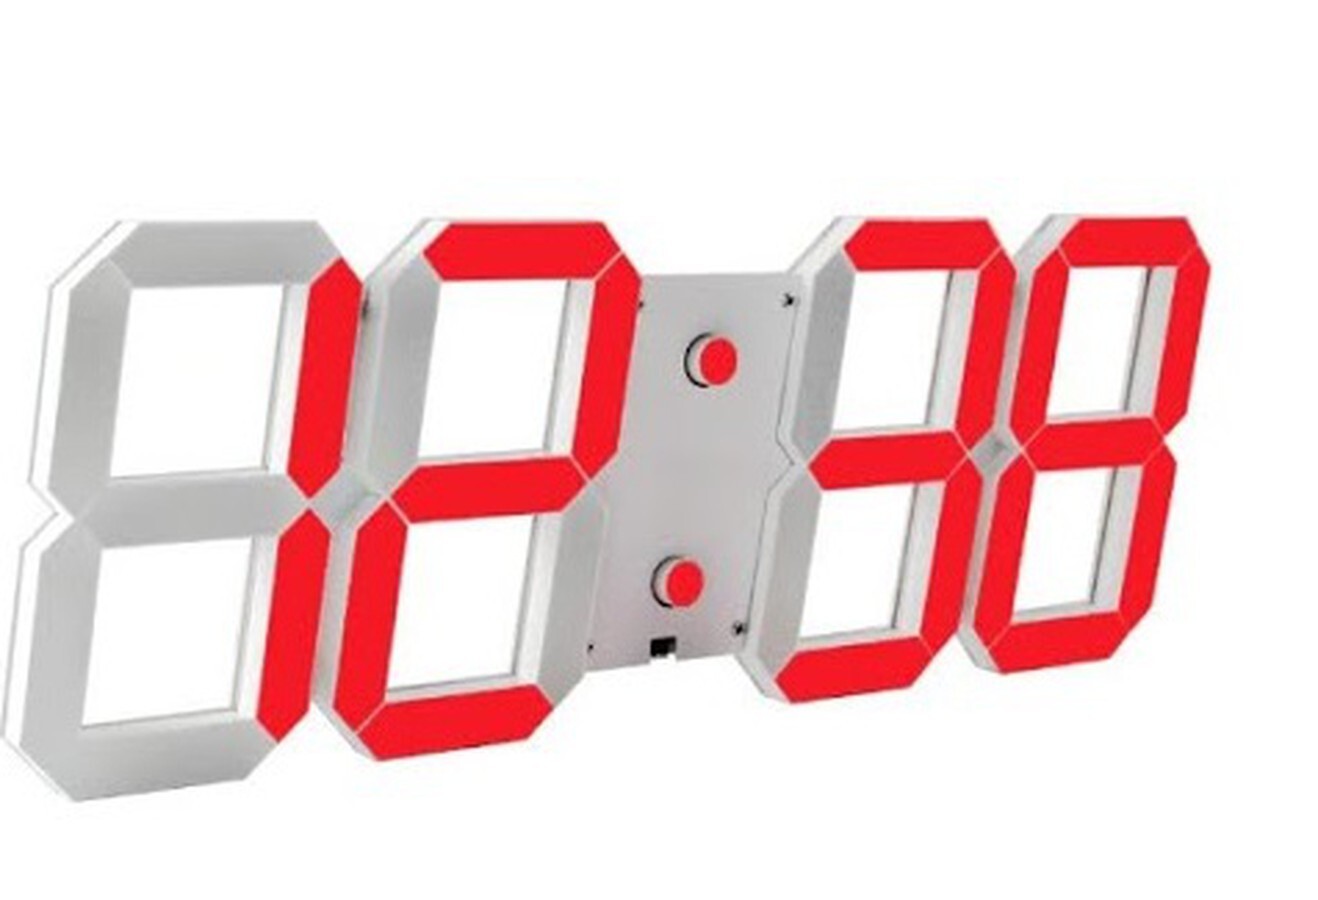 Đồng hồ LED 3D Smart Clock treo tường